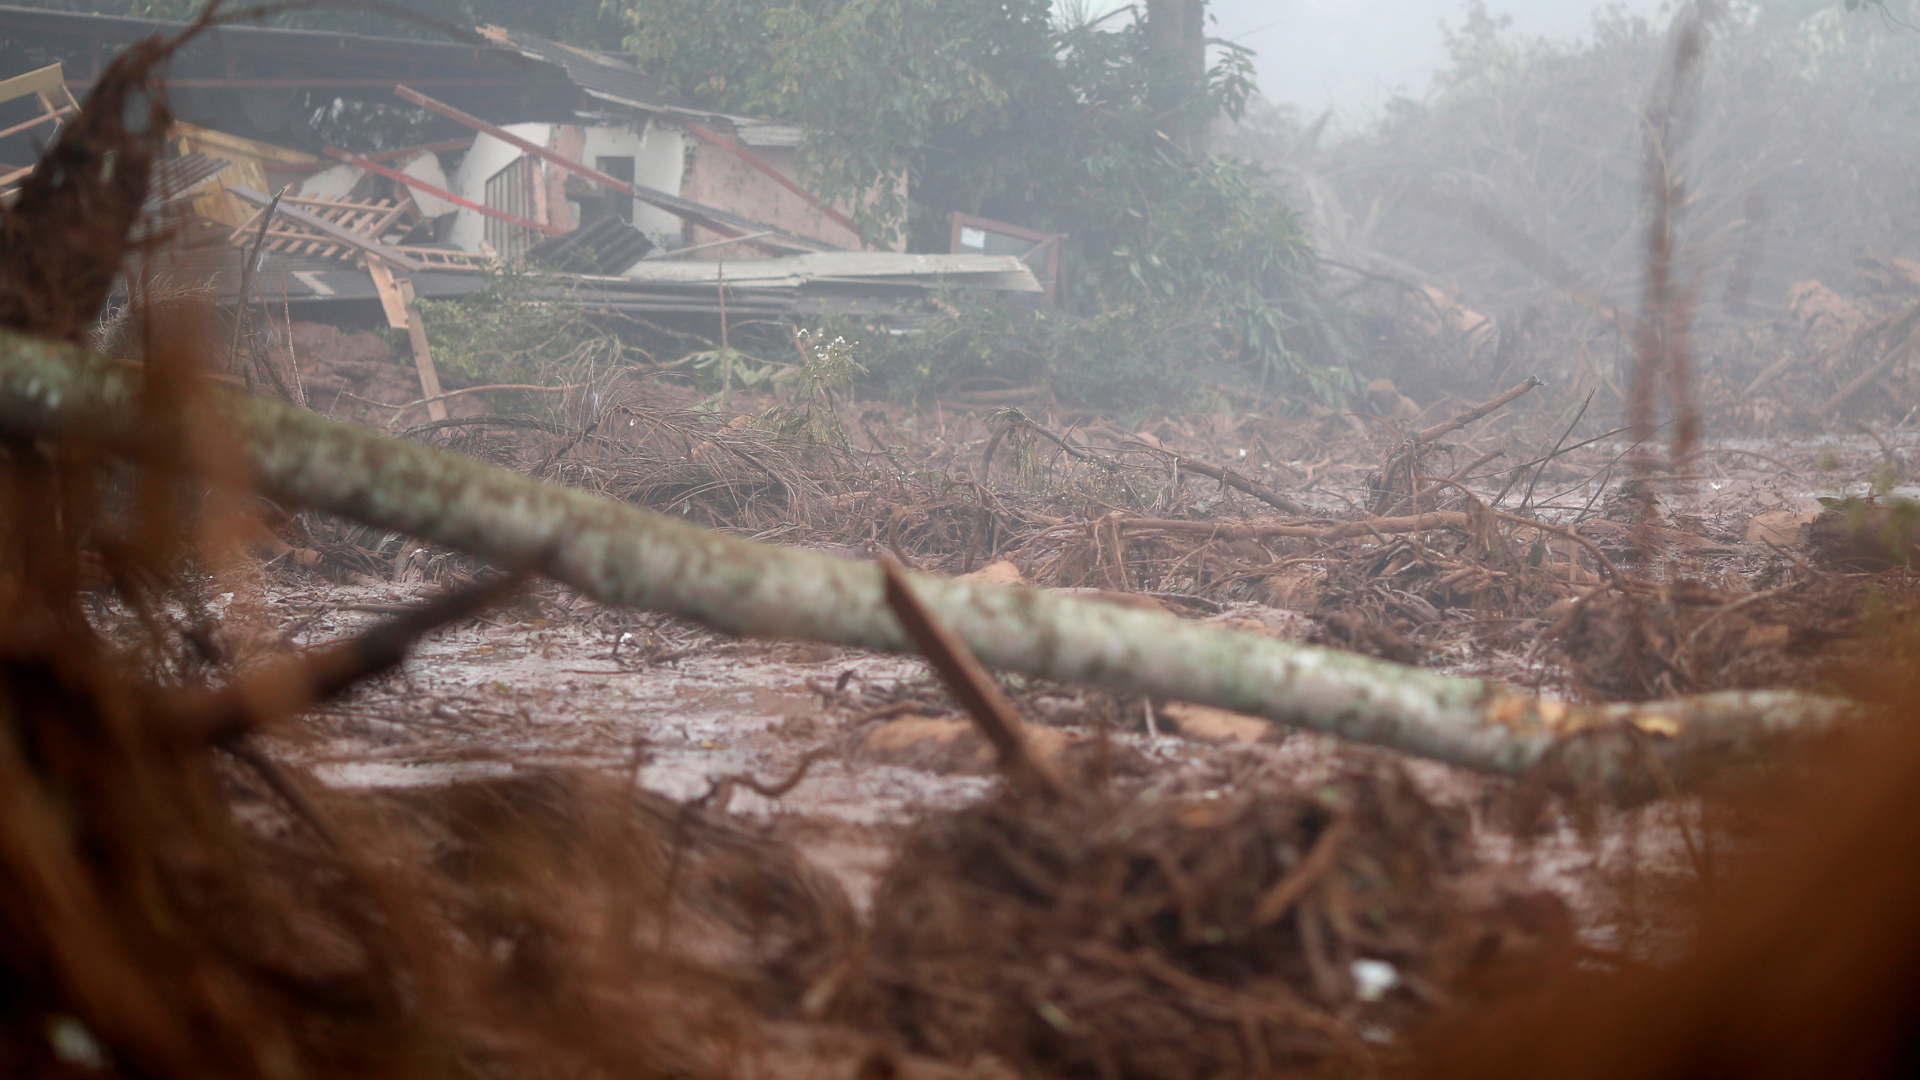 Von der Schlammlawine zerstörtes Haus | Bildquelle: REUTERS